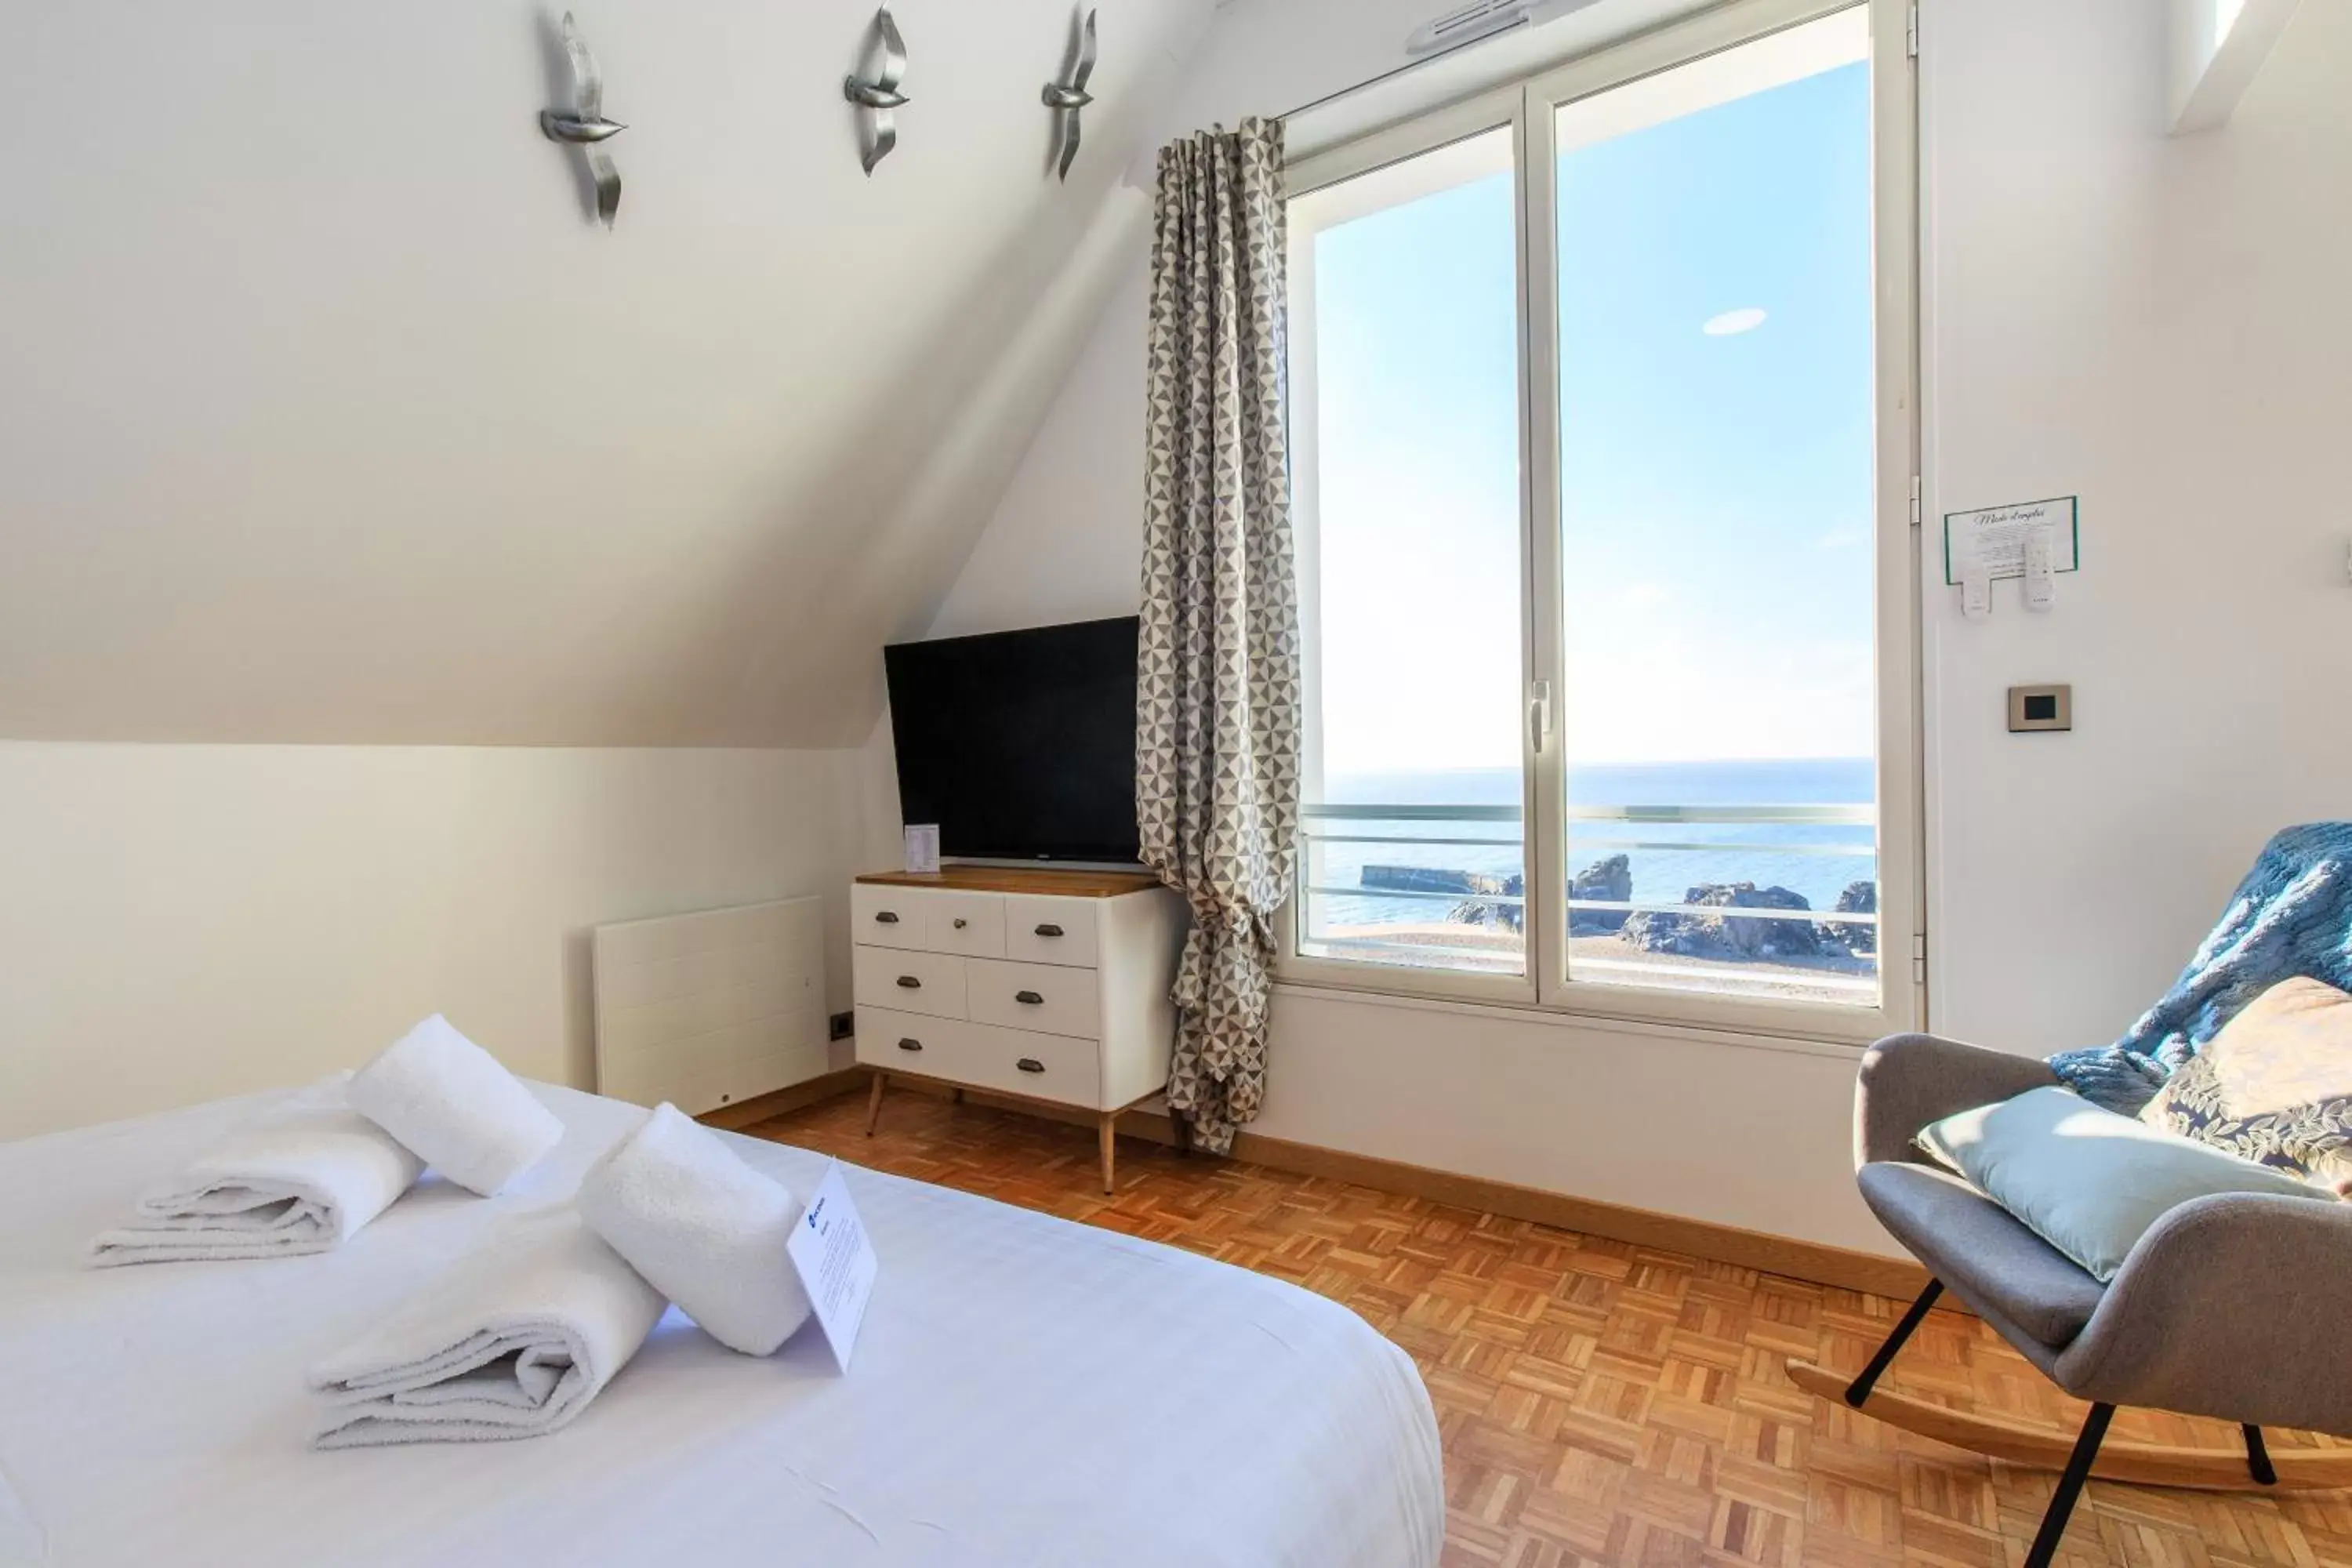 View (from property/room) in Best Western Hotel De La Plage Saint Marc sur Mer